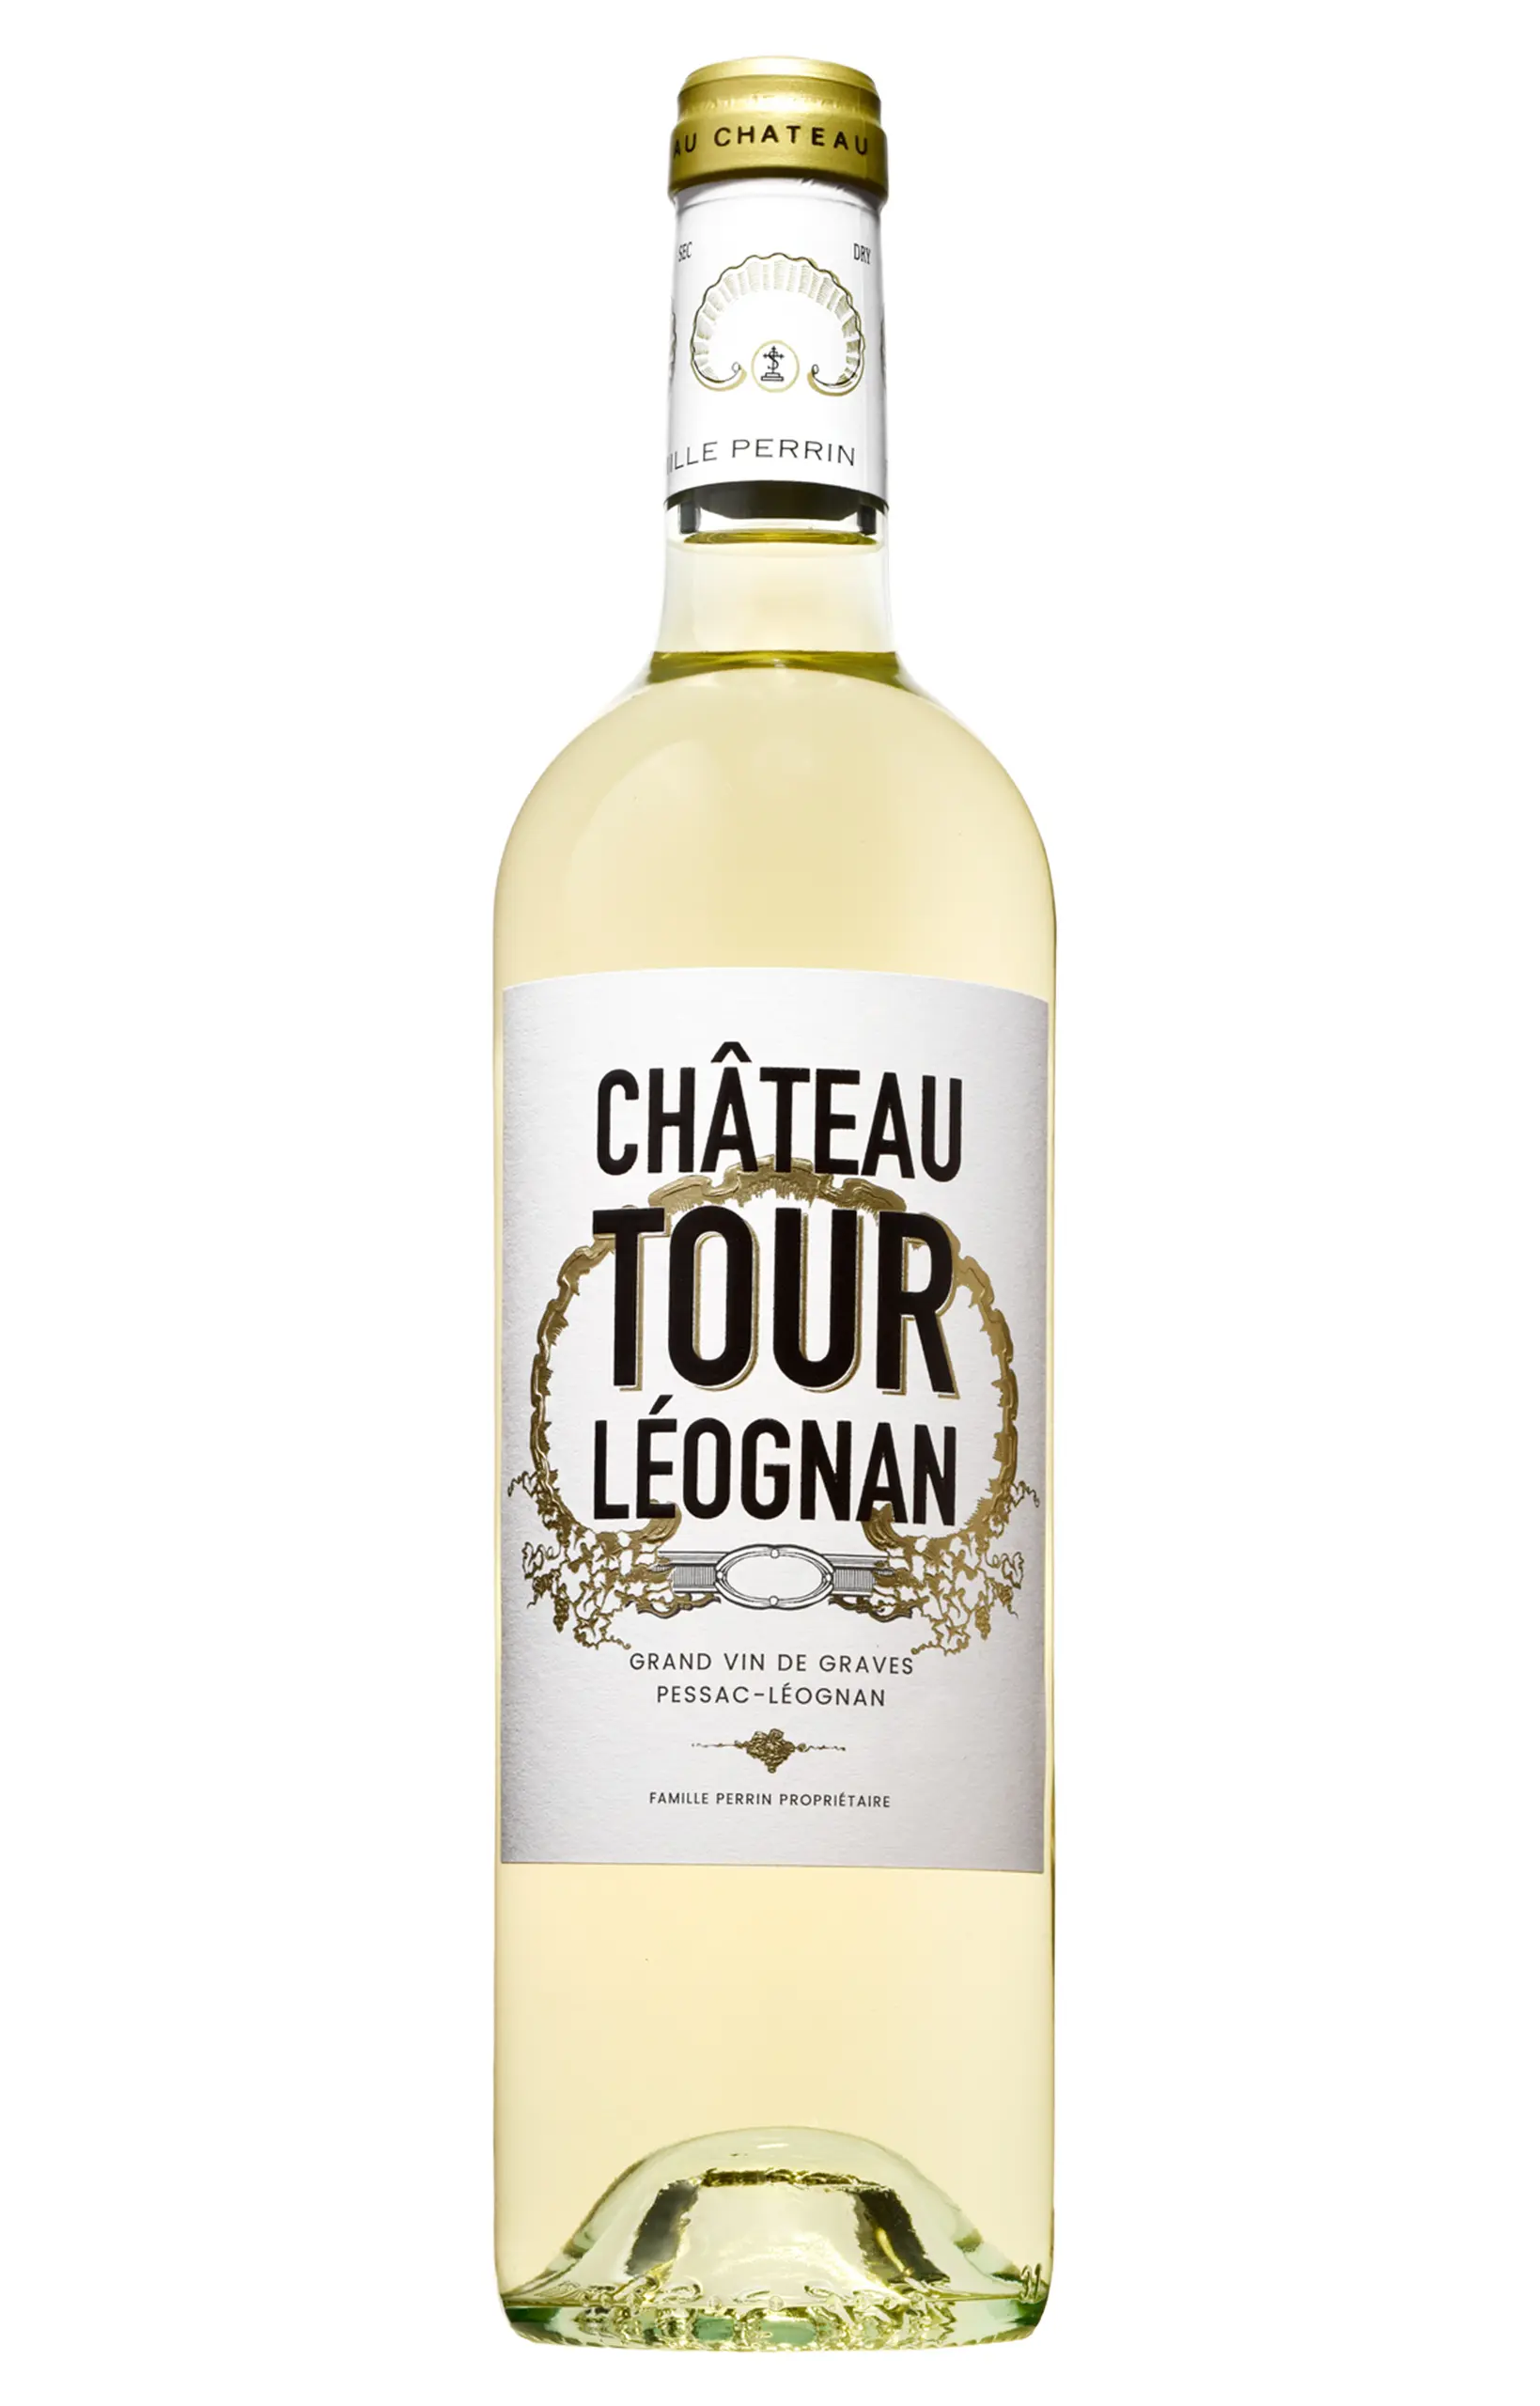 Achat en ligne vins rouges du Chateau Carbonnieux Pessac Leognan.